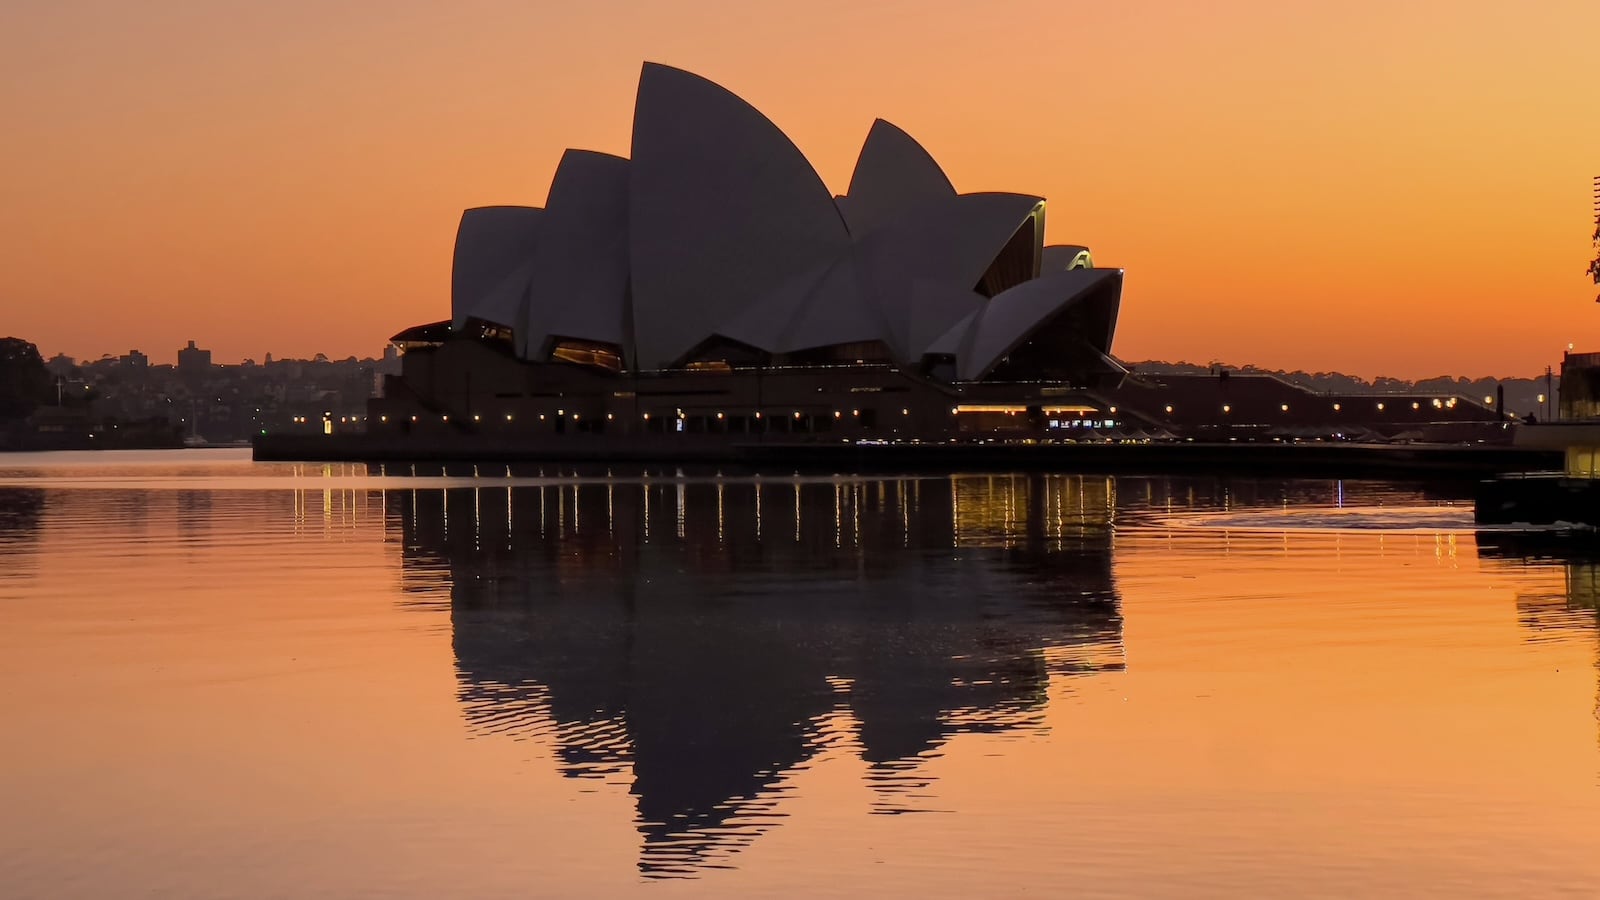 Sunrise over the iconic Sydney Opera House.